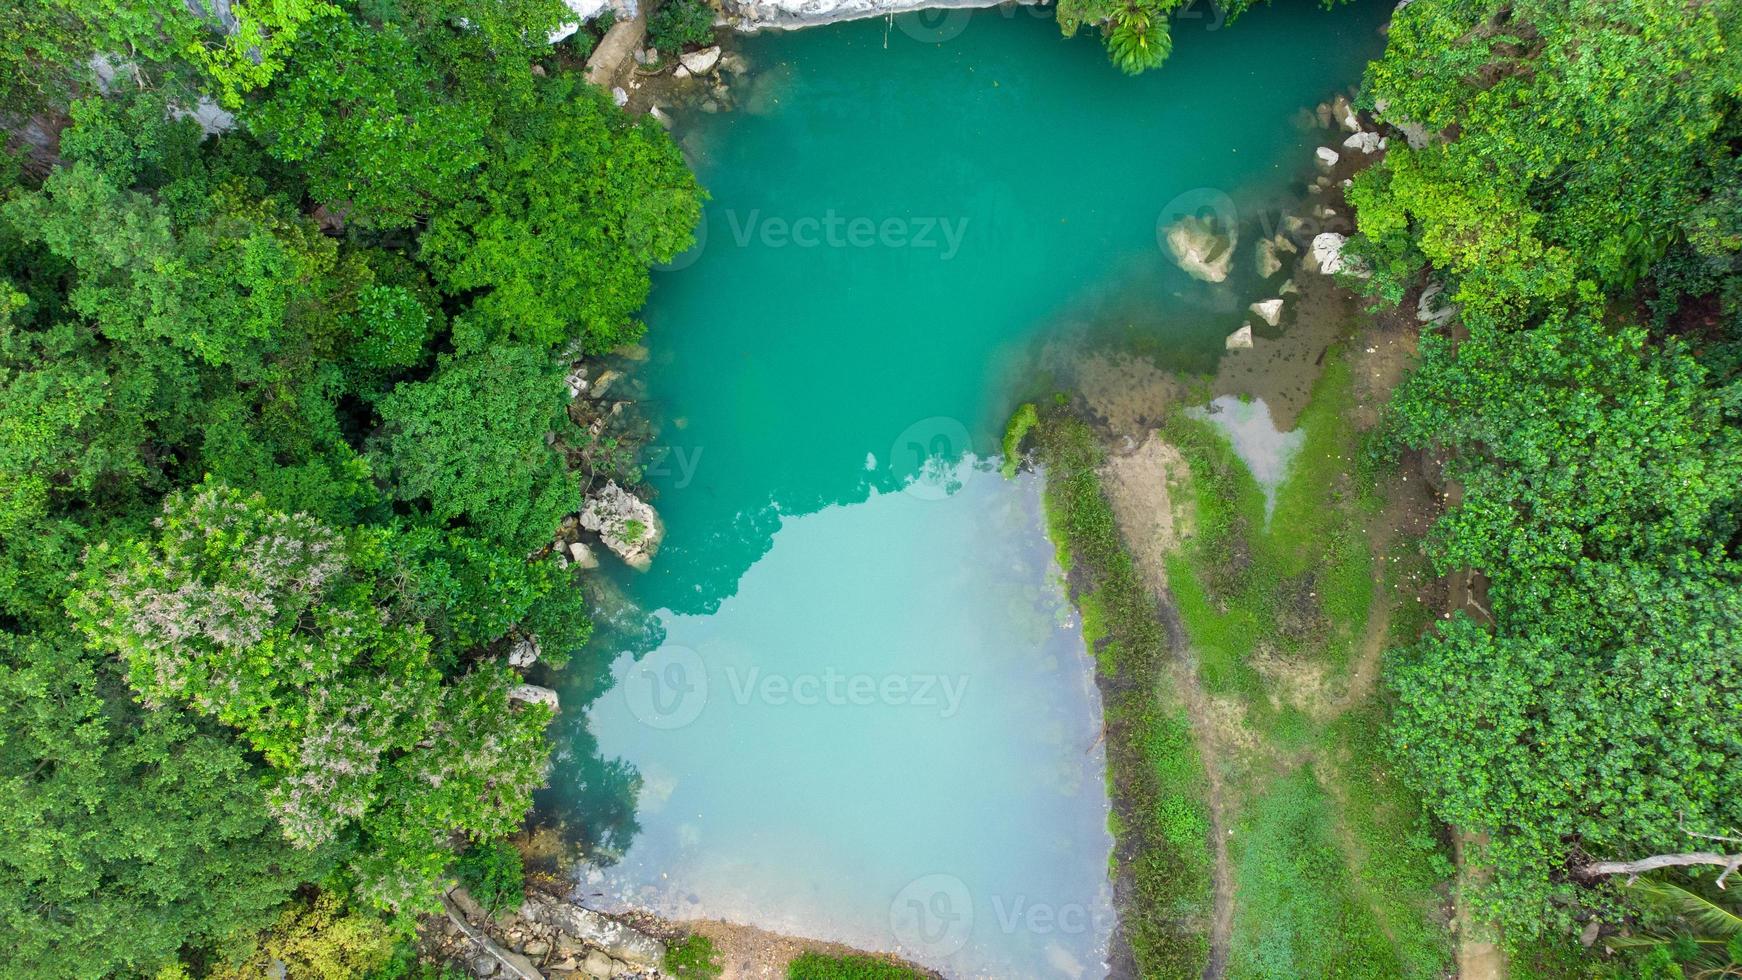 aereo Visualizza di puco krueng turista attrazione, il lago acqua è verde tosca foto